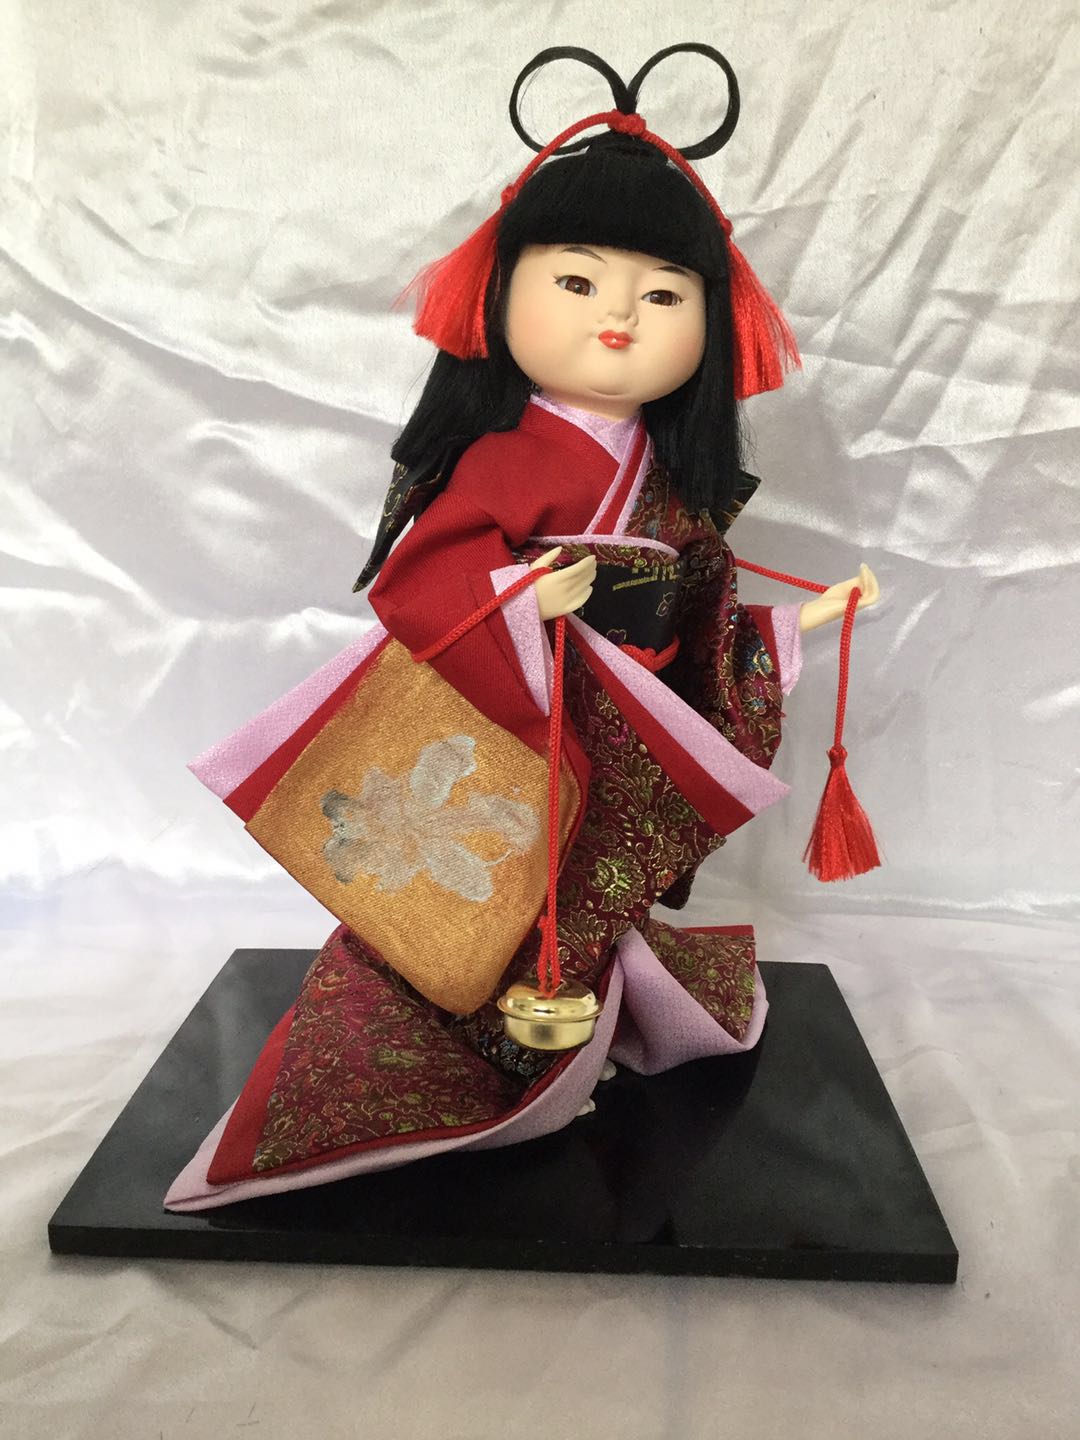 日本人形人偶絹人和服藝妓娃娃裝飾品日式創意禮品工藝擺飾